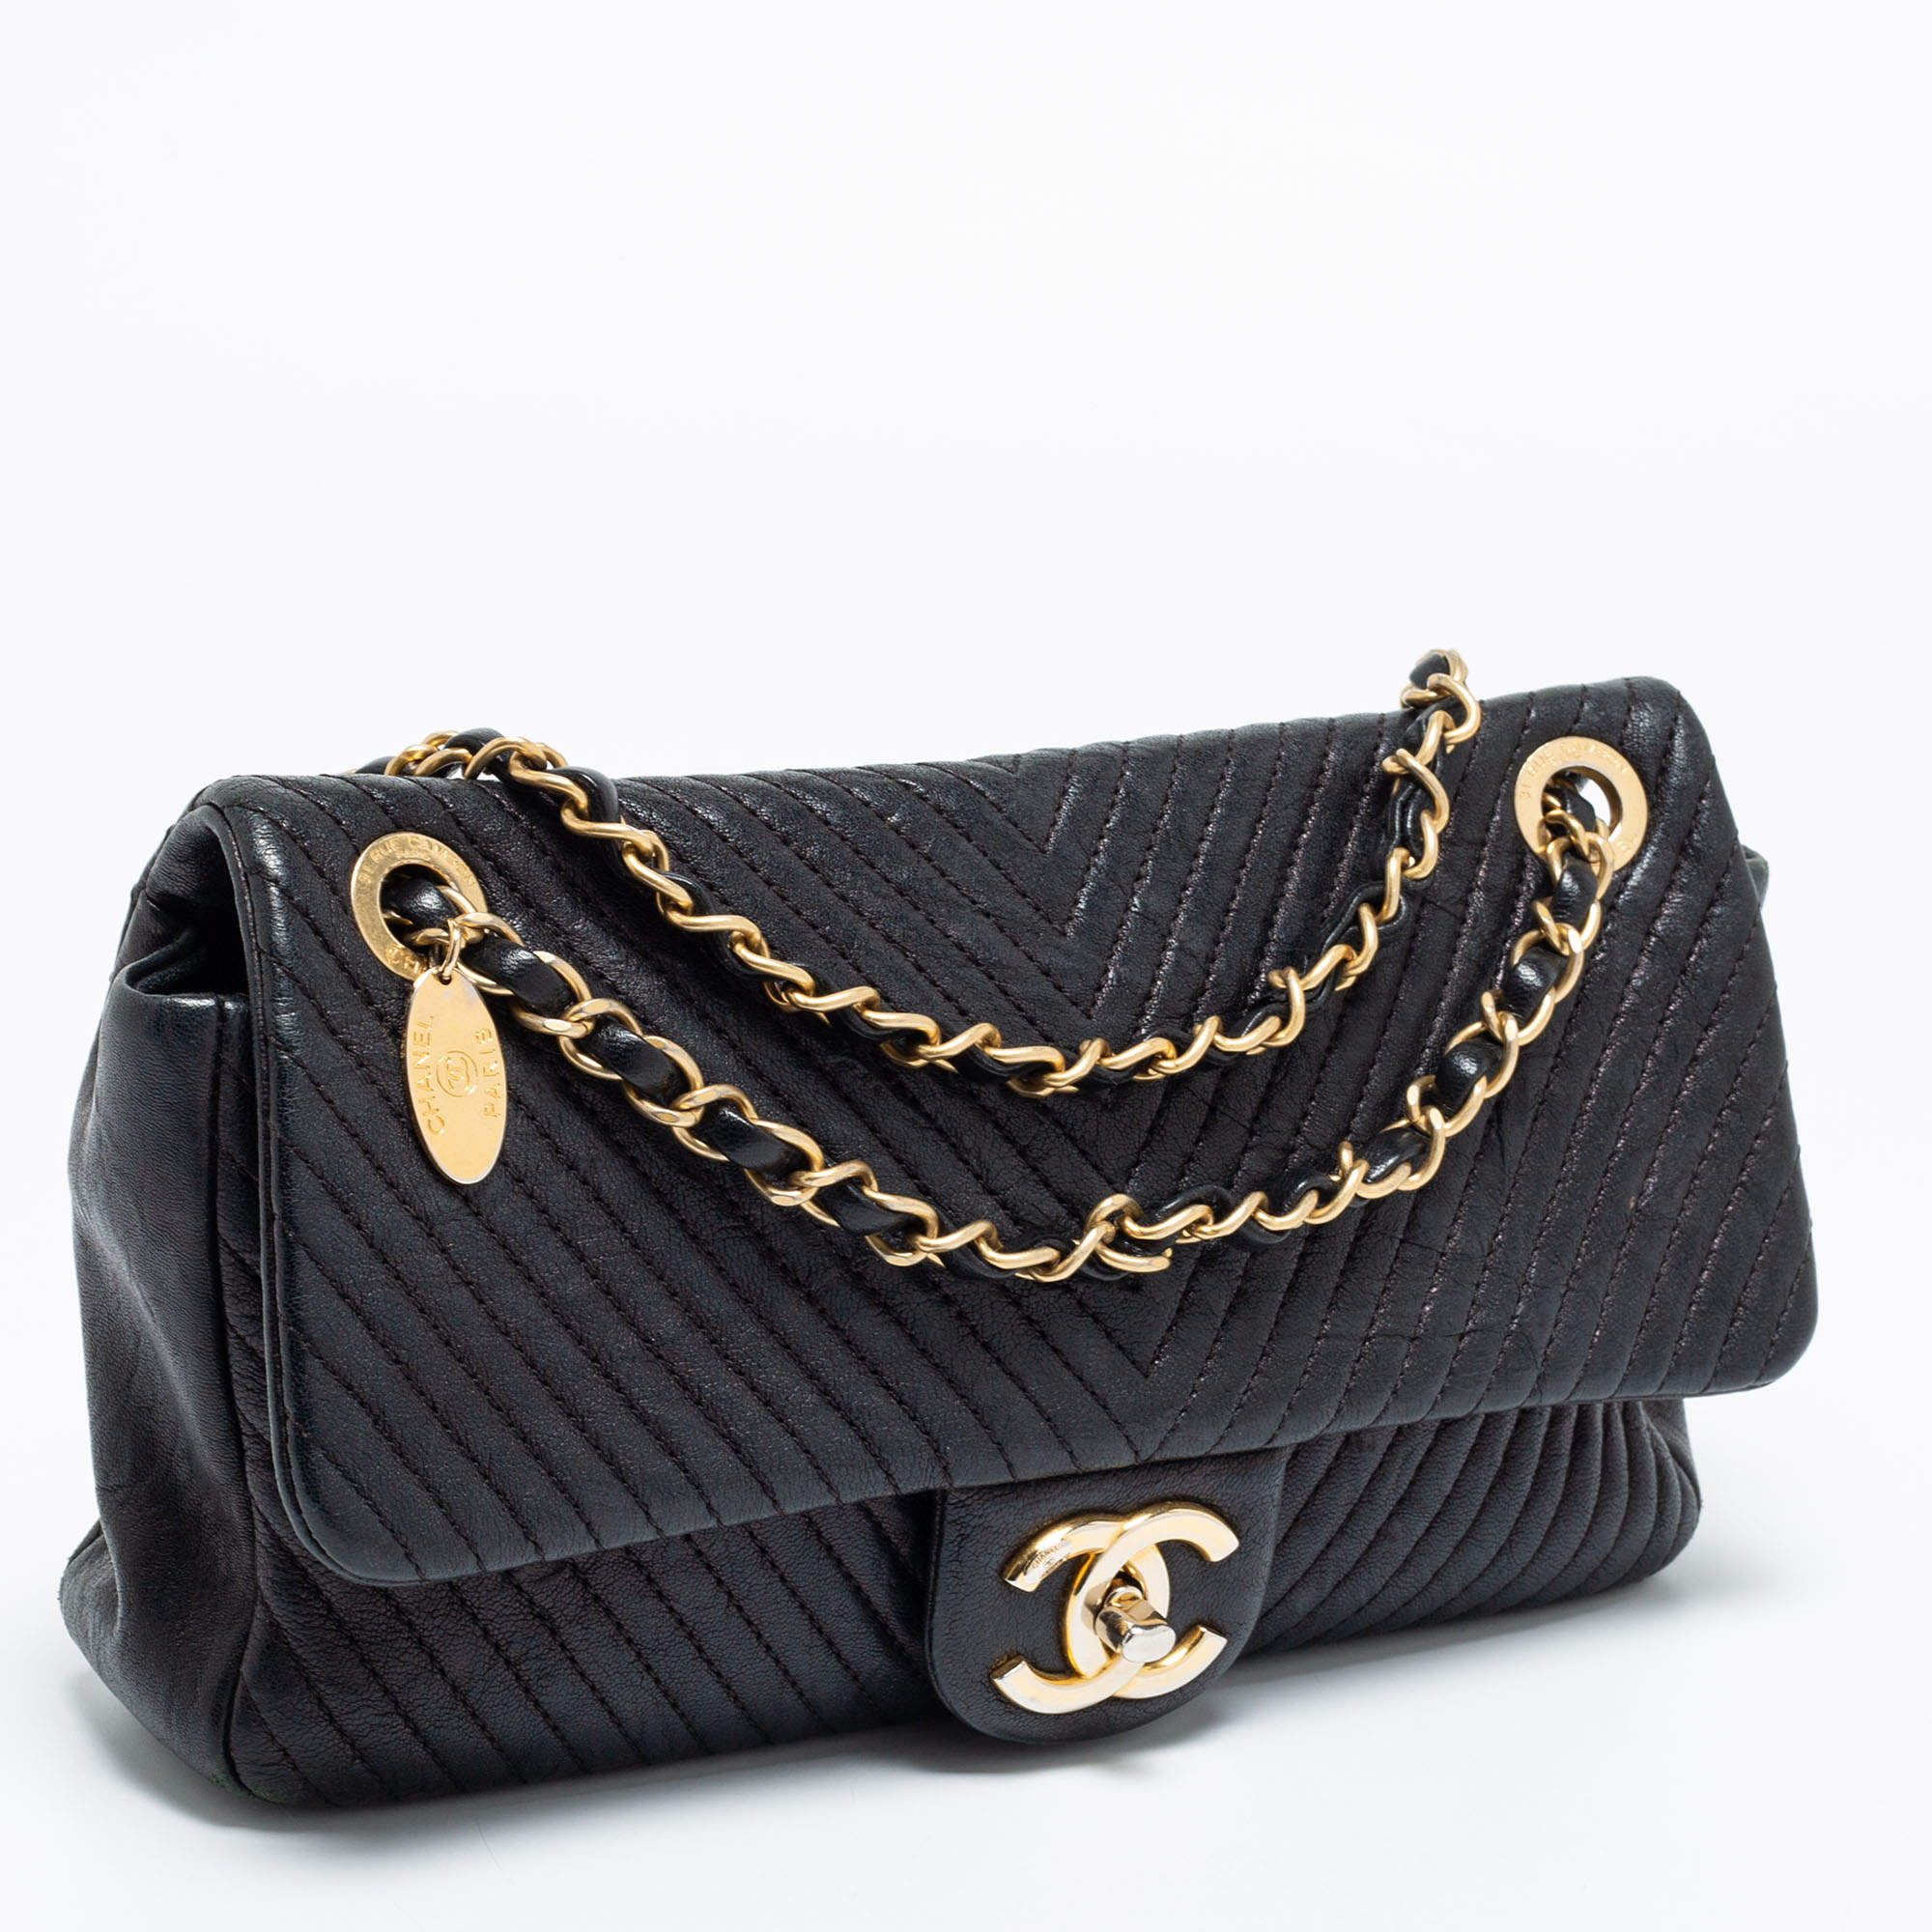 Chanel Black Surpique Chevron Leather Medium Flap Bag